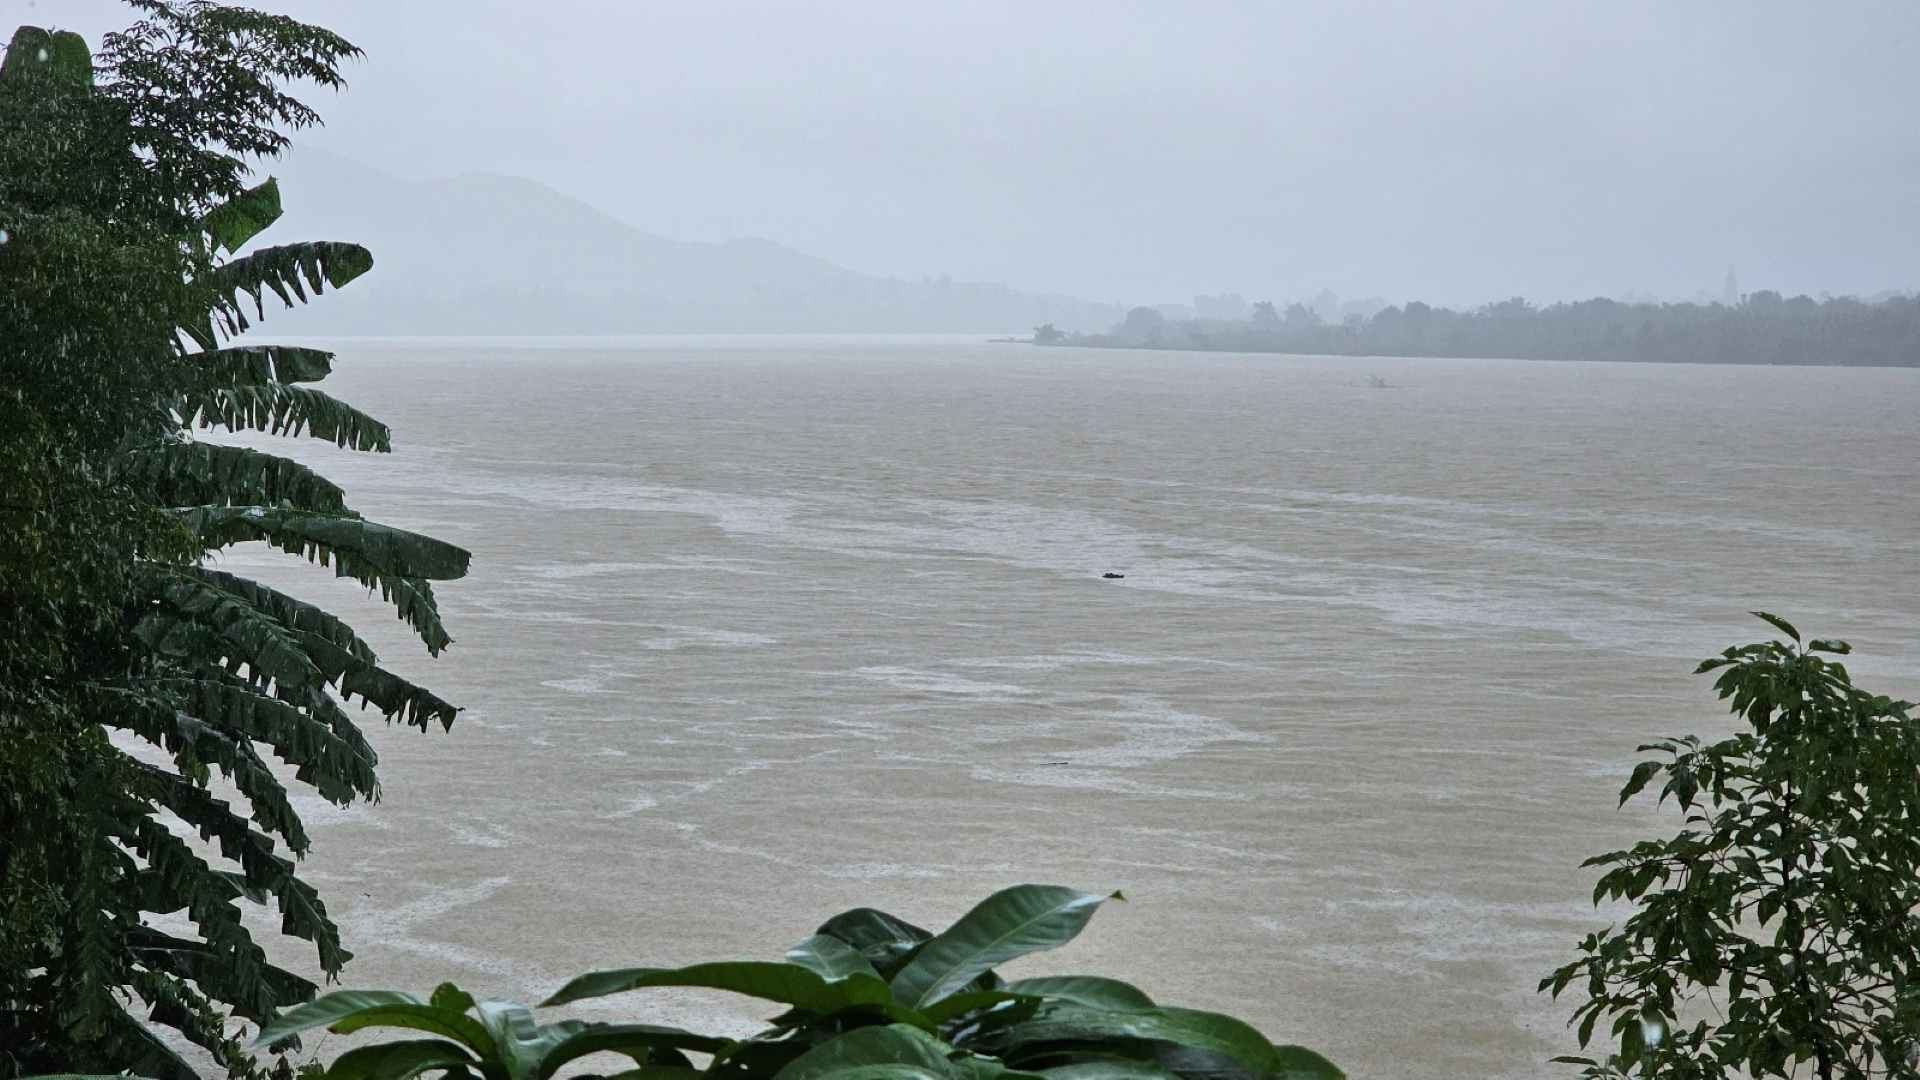 Vừa qua, do ảnh hưởng của áp thấp nhiệt đới, tỉnh Thừa Thiên Huế đã đón nhận những đợt mưa rất lớn trong các ngày 13, 17 và 18.10, khiến mực nước tại các sông như sông Hương, sông Bồ, sông Bạch Yến dâng cao.